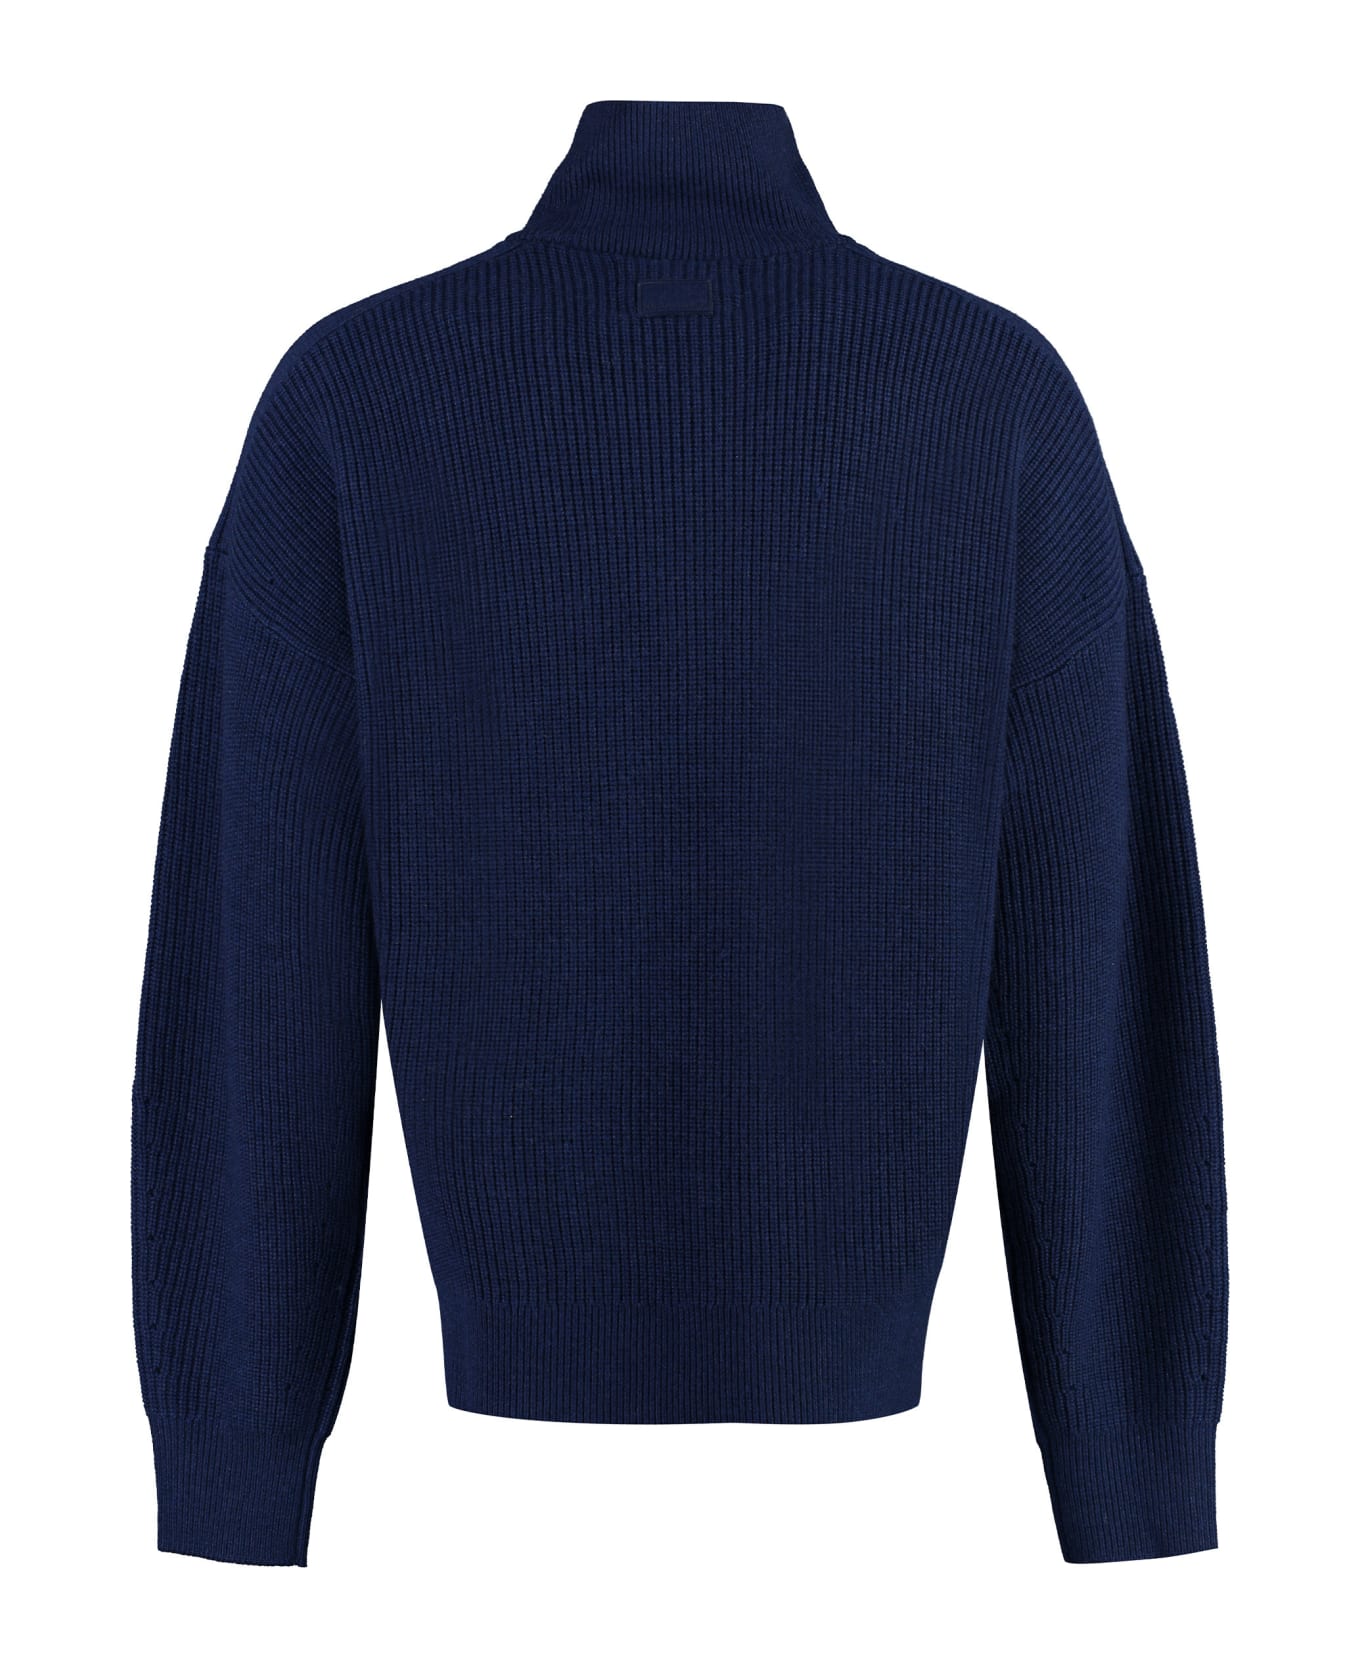 Isabel Marant Benny Turtleneck Wool Pullover - blue ニットウェア